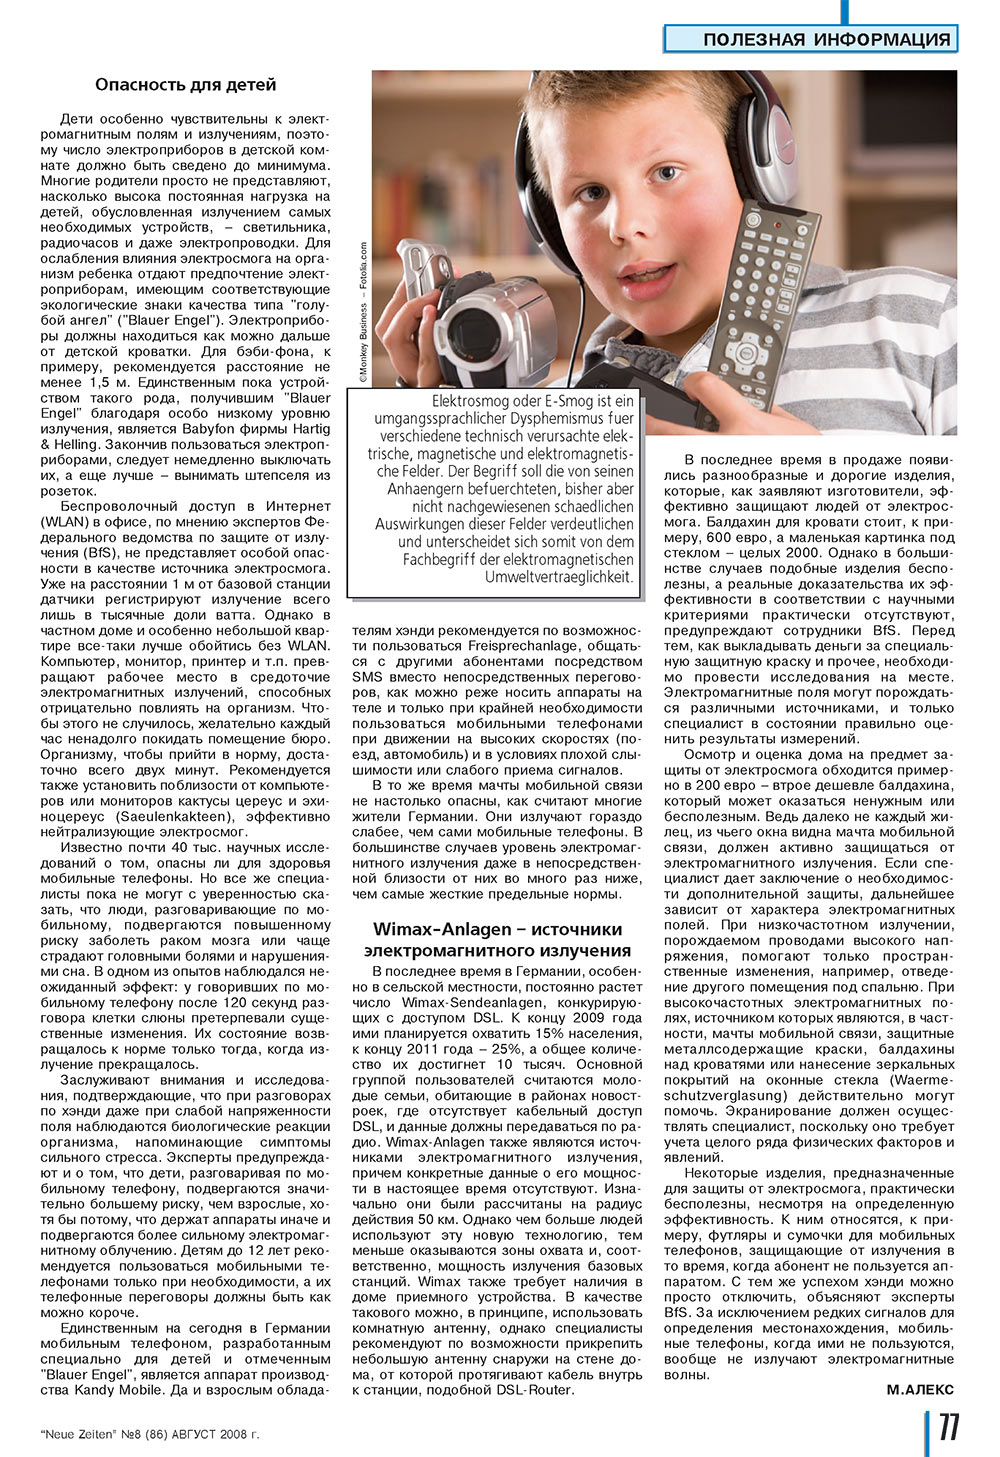 Neue Zeiten, журнал. 2008 №8 стр.77